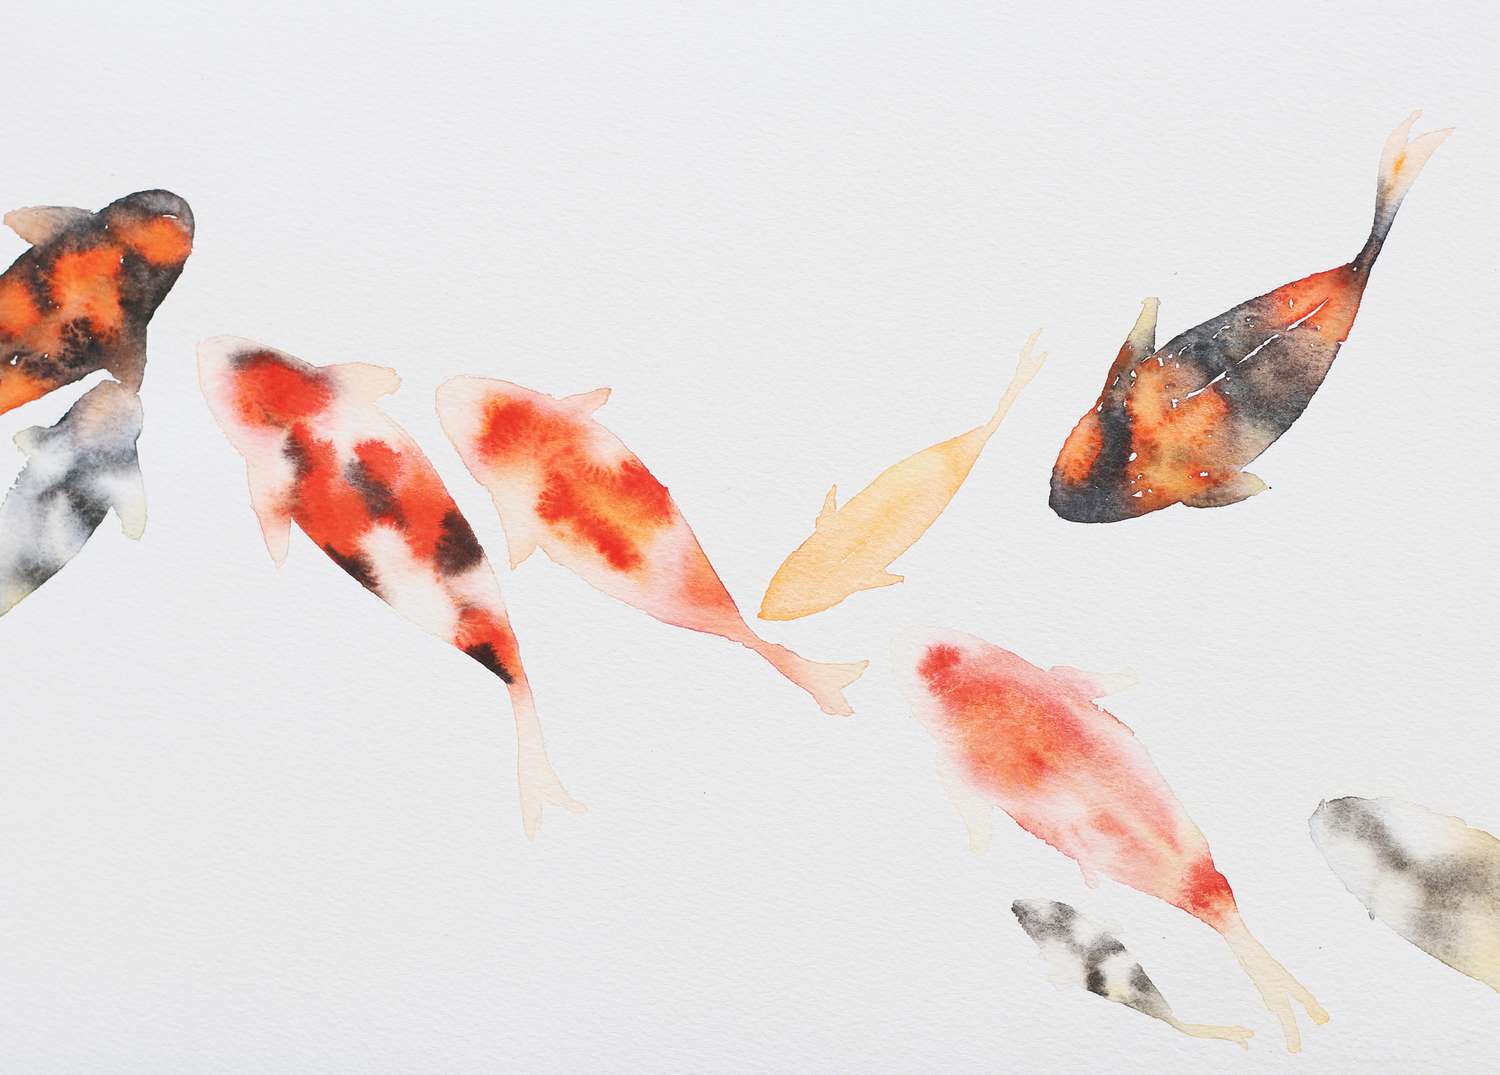 Pintura de peces con acuarela sobre papel blanco